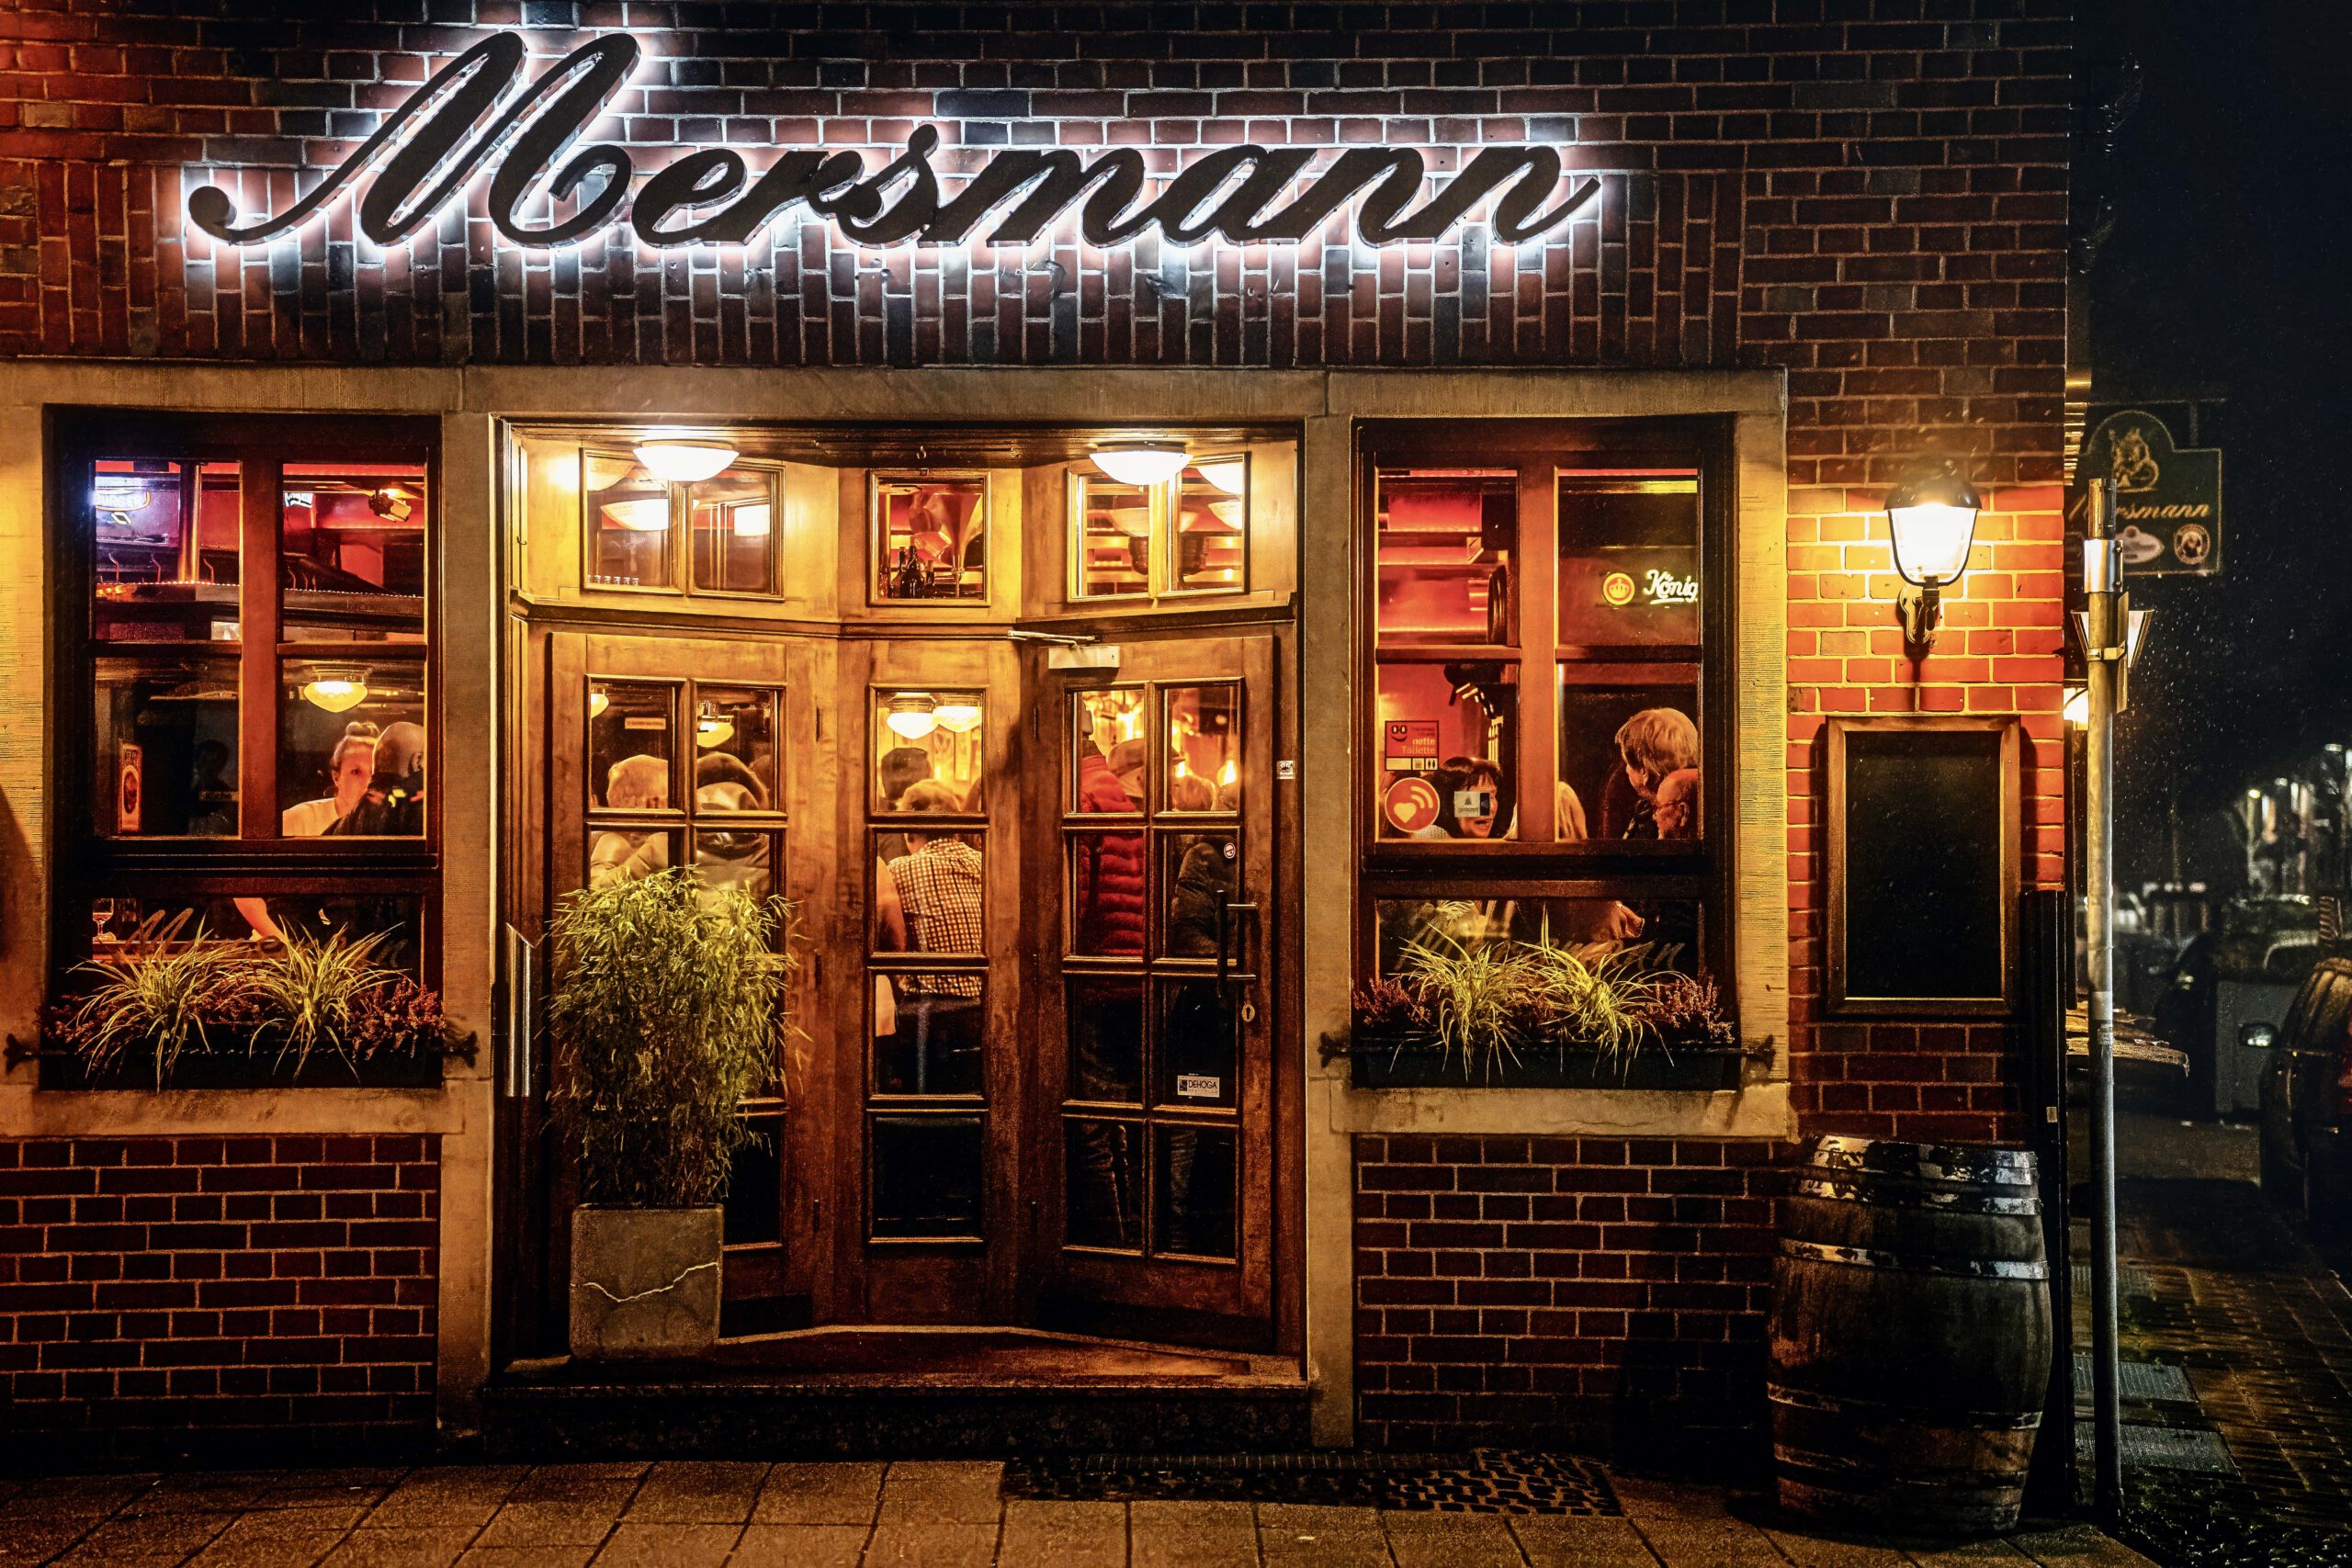 Beleuchtetes Restaurant "Meersmann" bei Nacht.